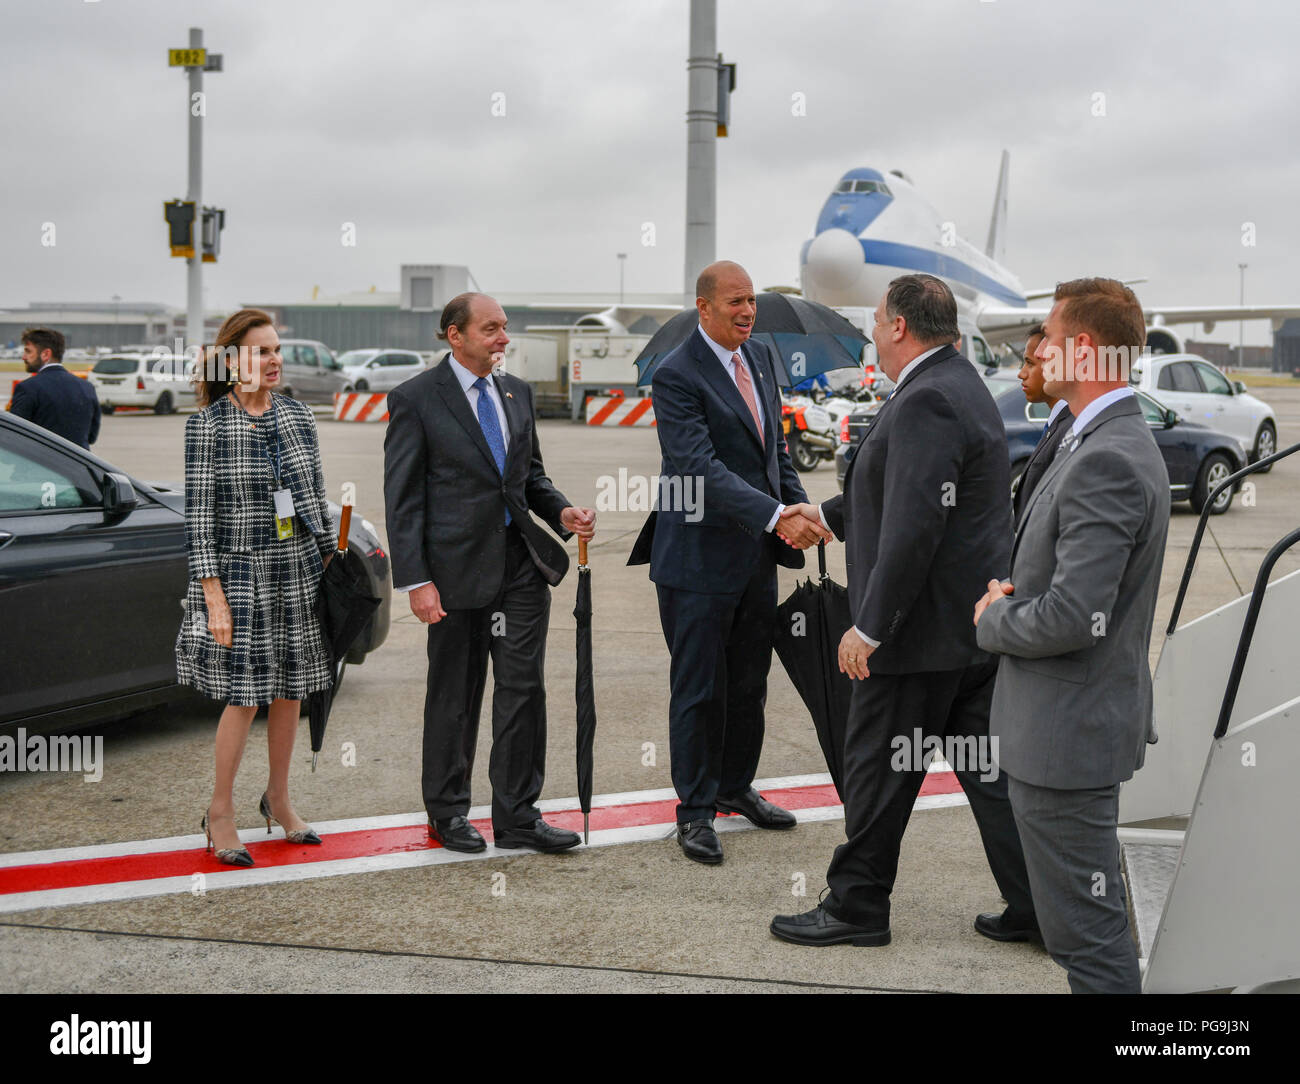 Us-Staatssekretär Michael R. Pompeo ist durch US-Botschafter bei der Europäischen Union Gordon Sondland und US-Botschafter in Belgien Ronald Gidwitz bei ihrer Ankunft in Brüssel, Belgien begrüßt am 10. Juli 2018. Stockfoto